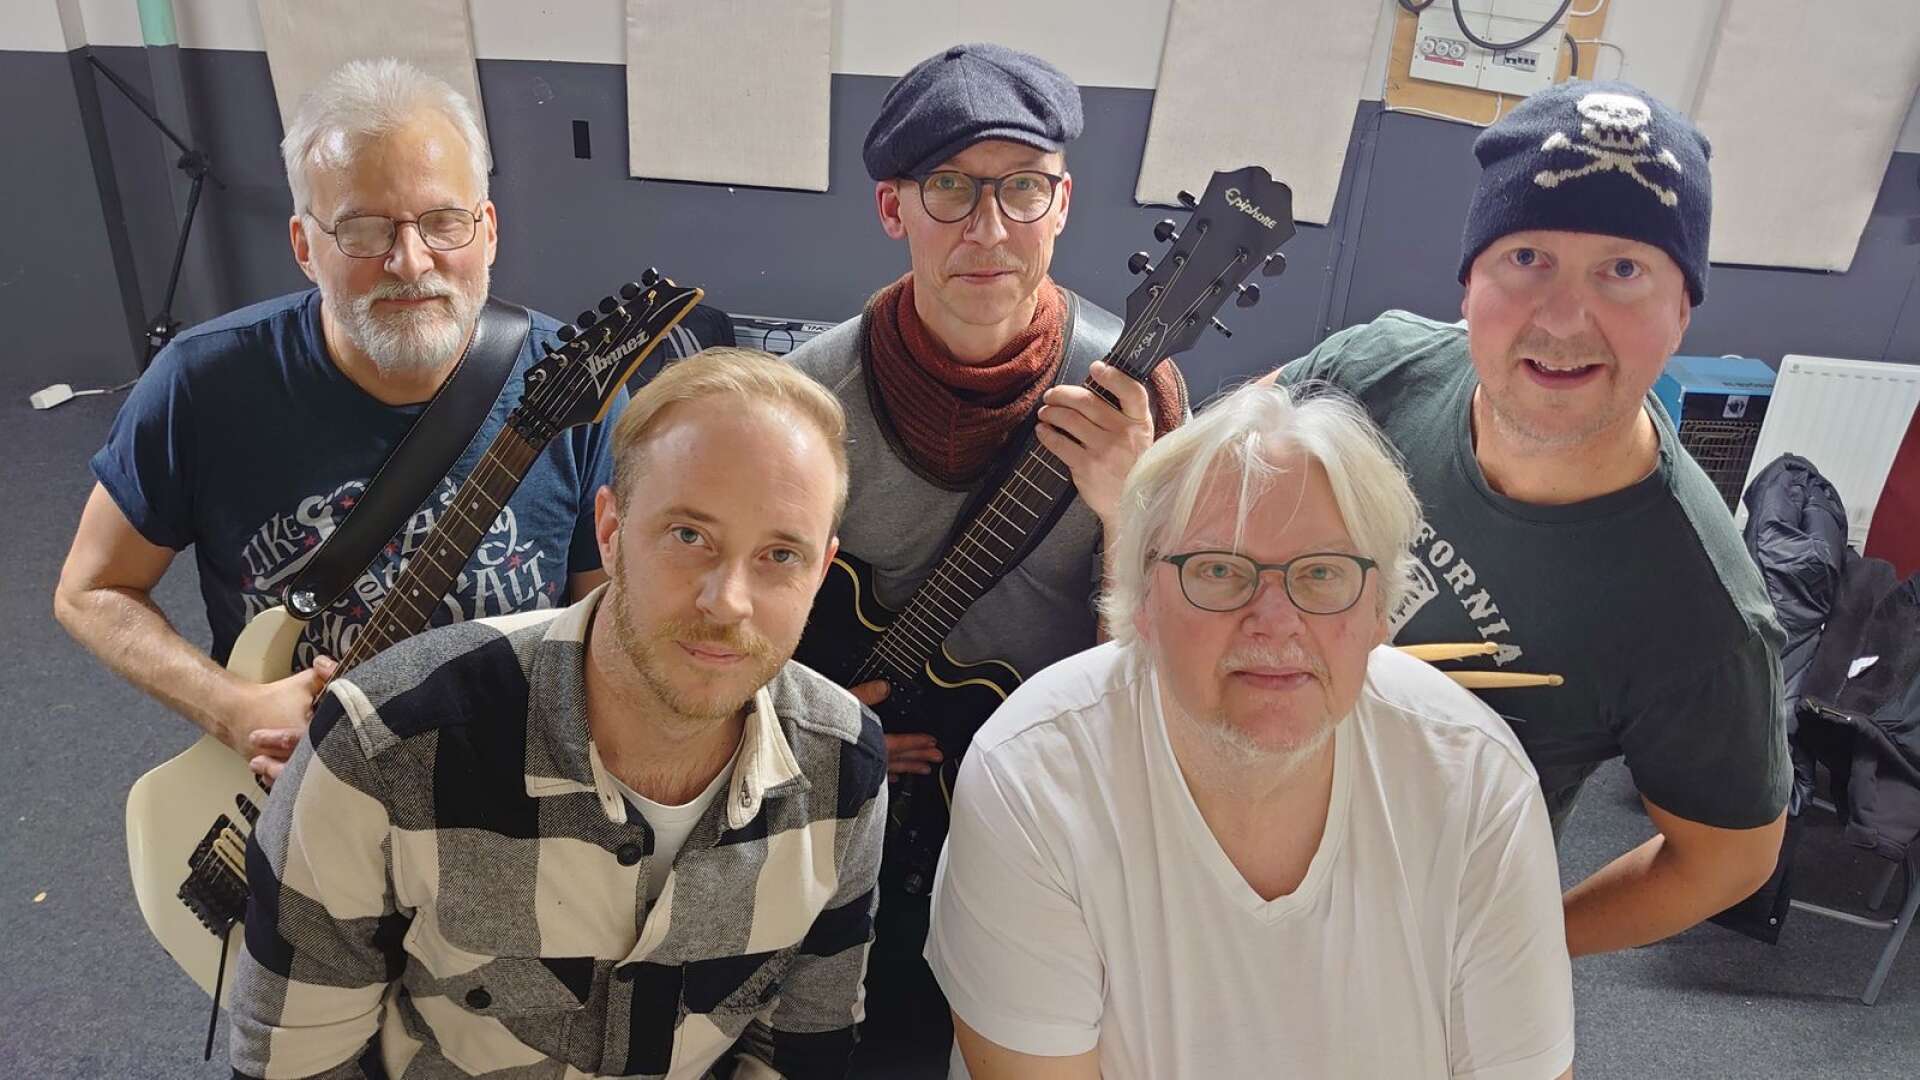 Bakre raden från vänster Bengt Rönning, Mats Ögren, Per Erlandsson som spelar i Just 4 fun. Främre raden från vänster Joakim Bergqvist och Gordon Danielsson som spelar i One night band. 